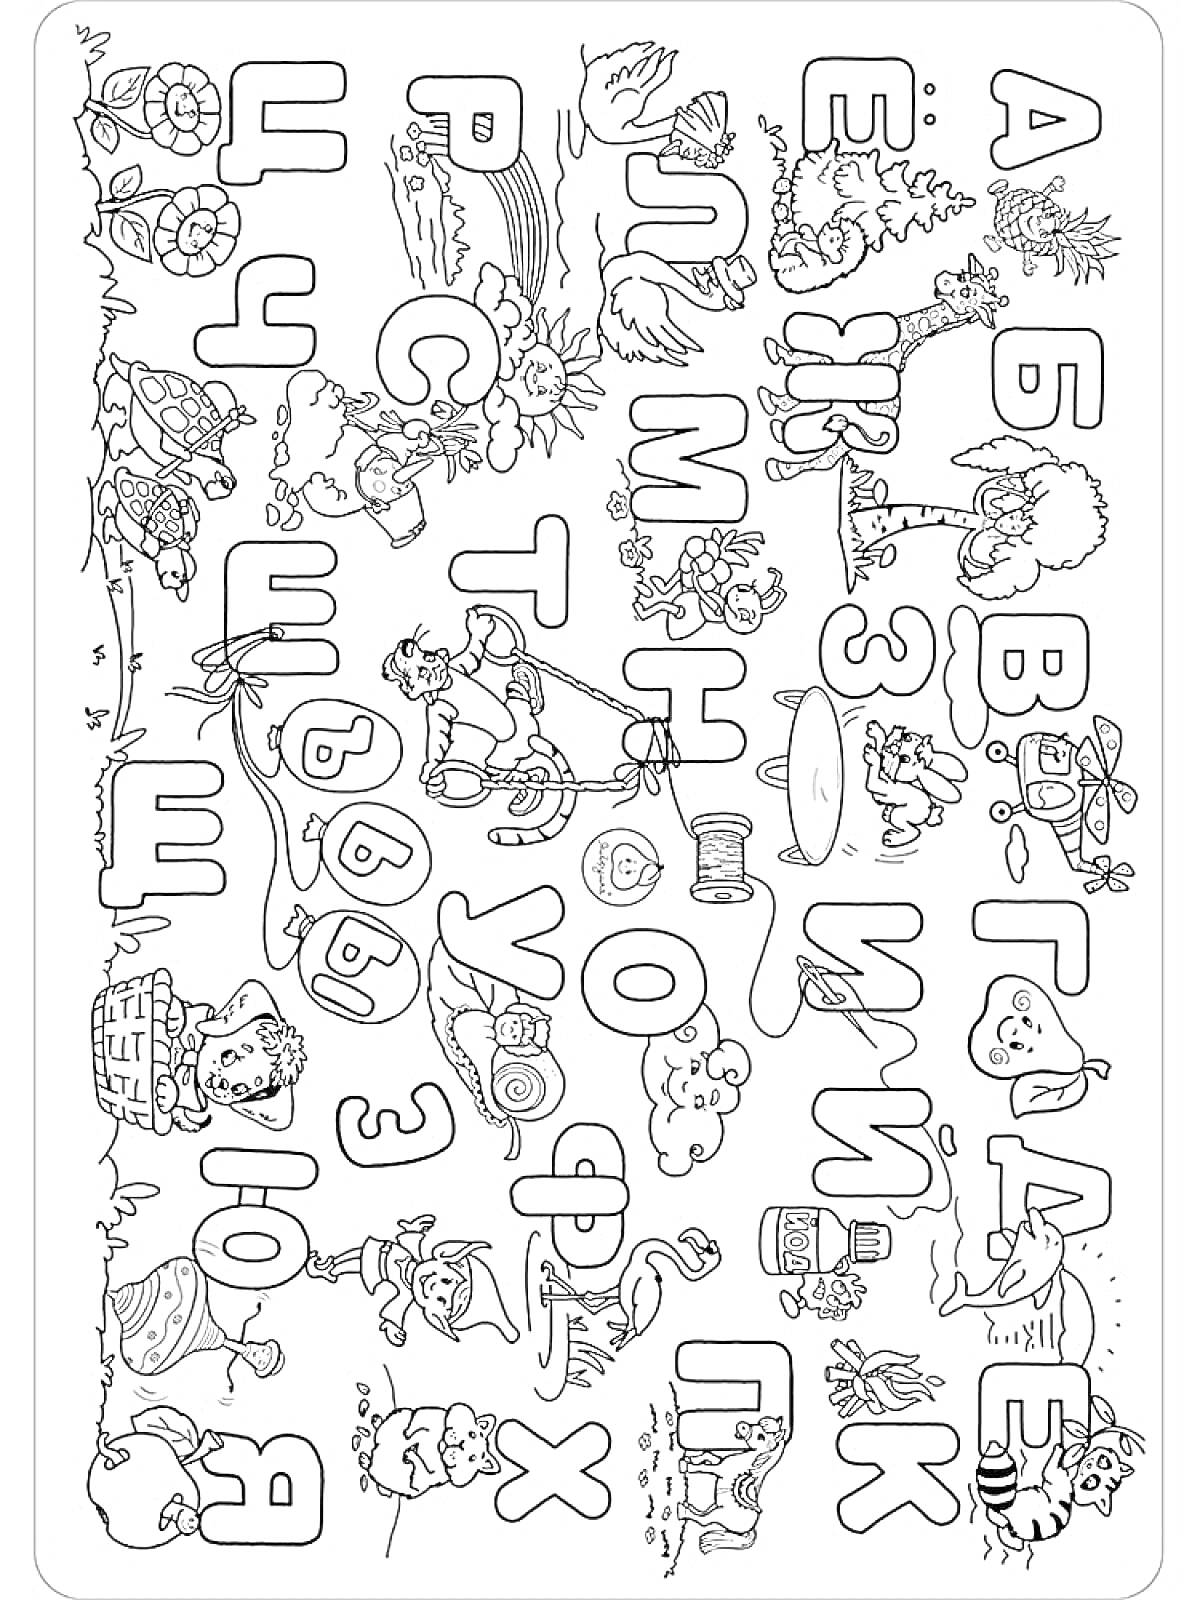 Раскраска Раскраска с буквами и рисунками, сопровождающими каждую букву алфавита